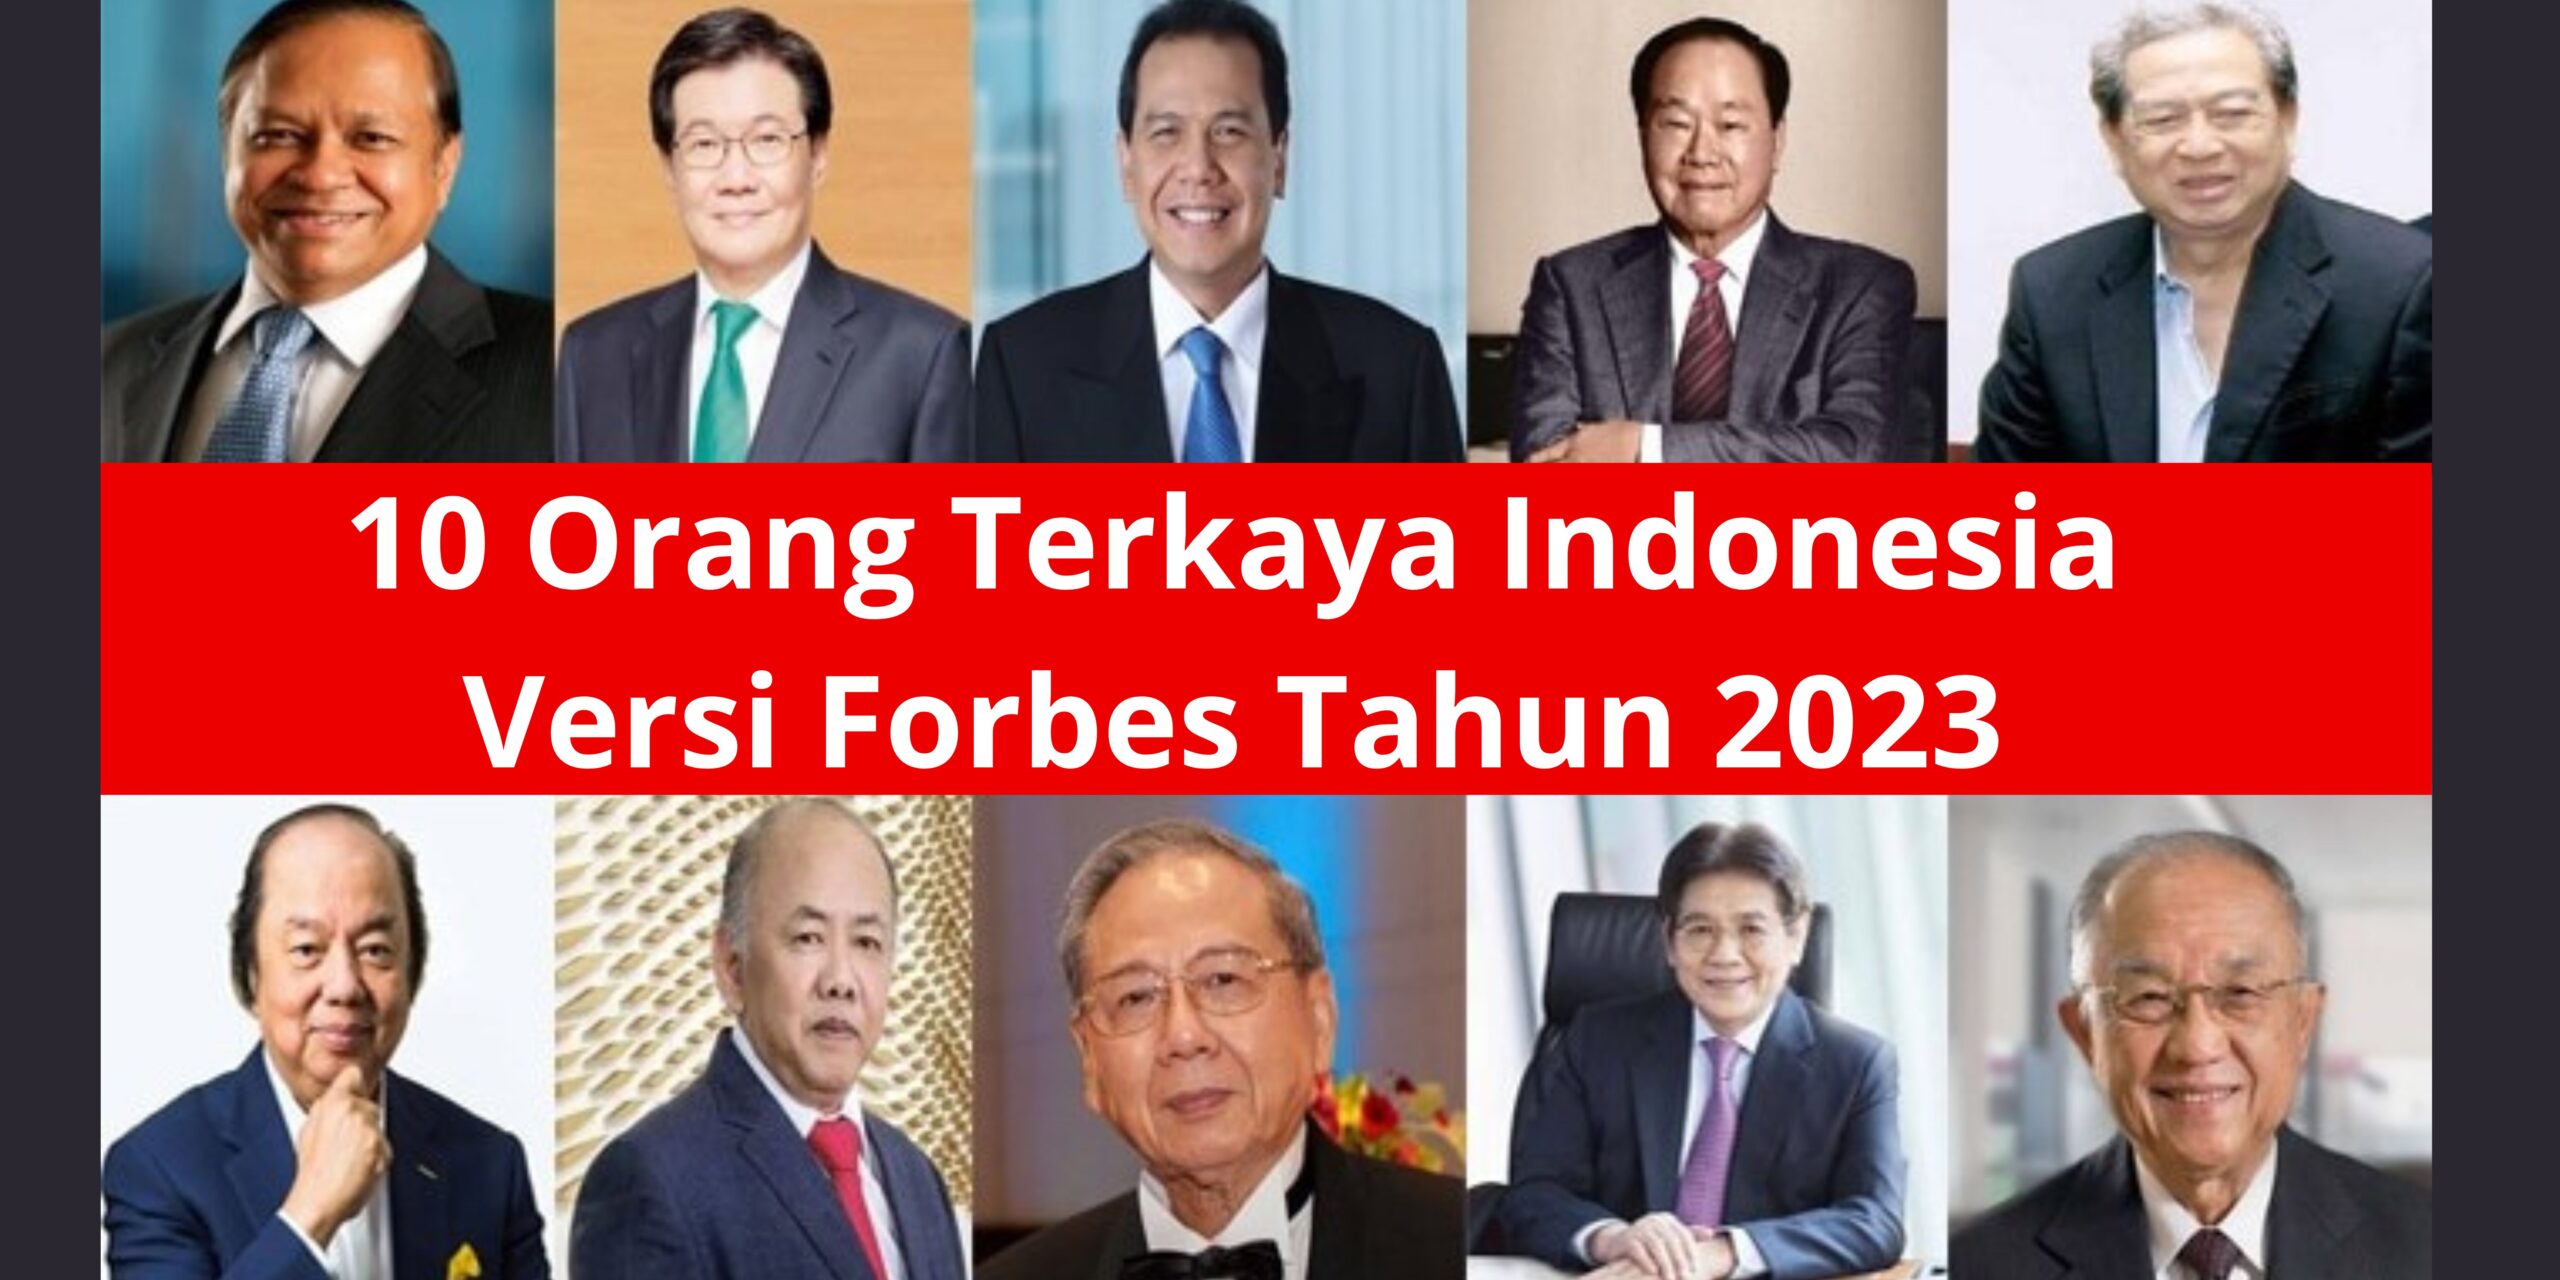 Ini Daftar Terbaru 10 Orang Terkaya Indonesia Tahun 2023 Versi Forbes